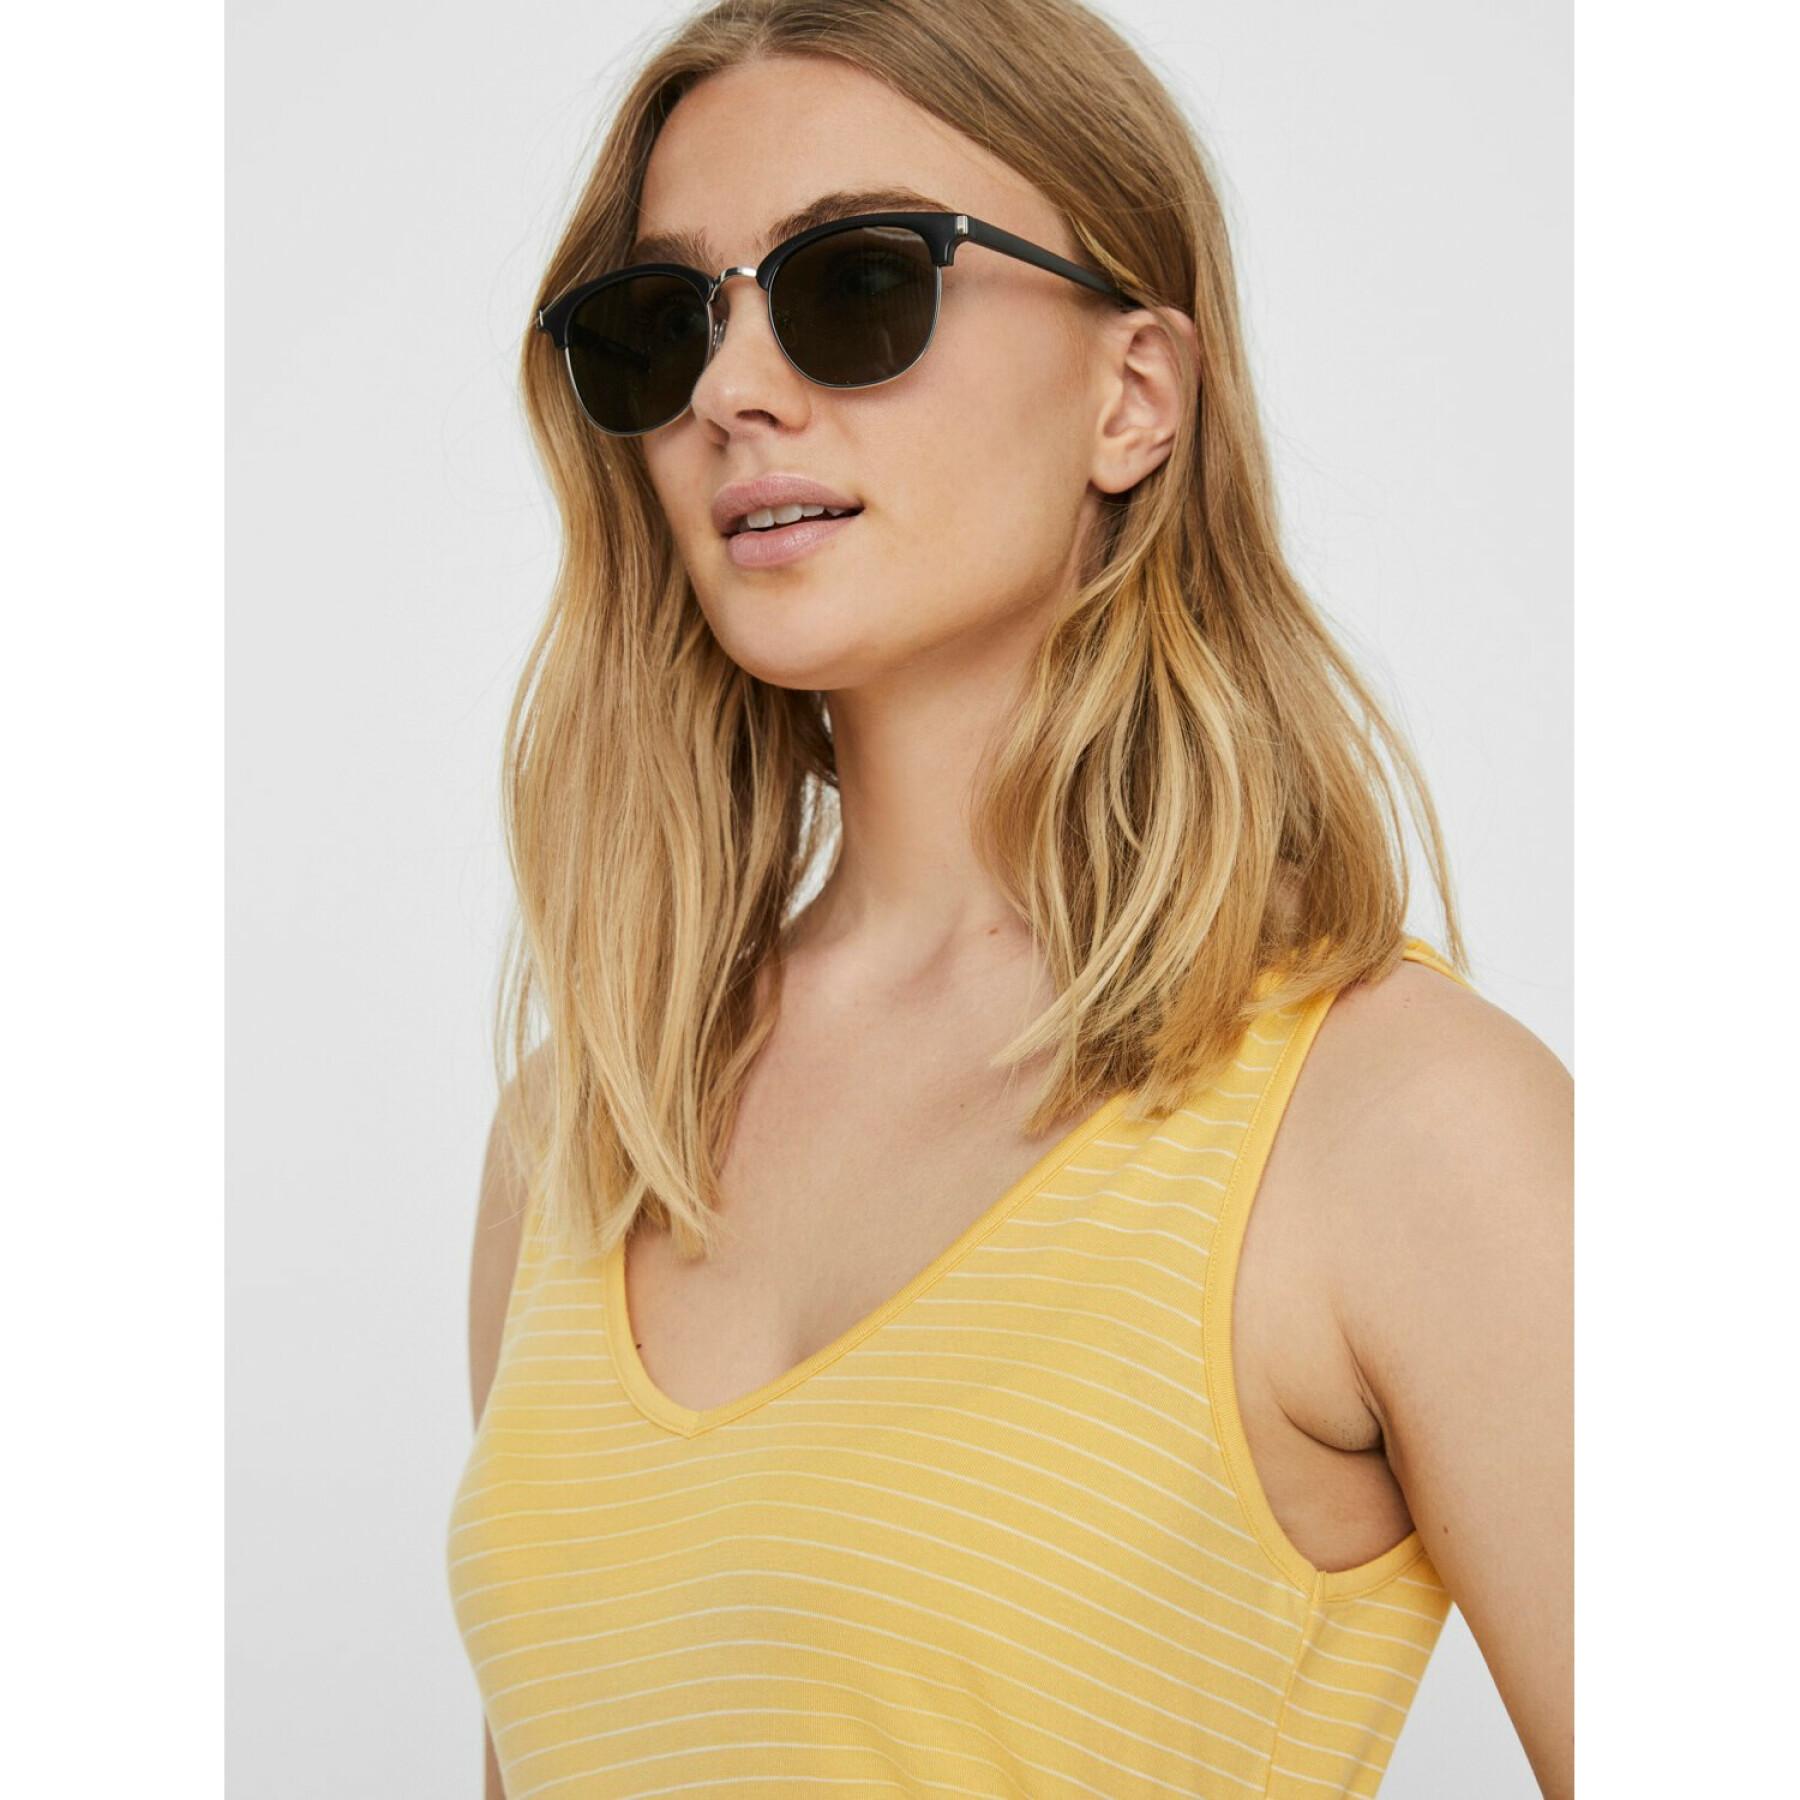 Damskie okulary przeciwsłoneczne Vero Moda vmalma